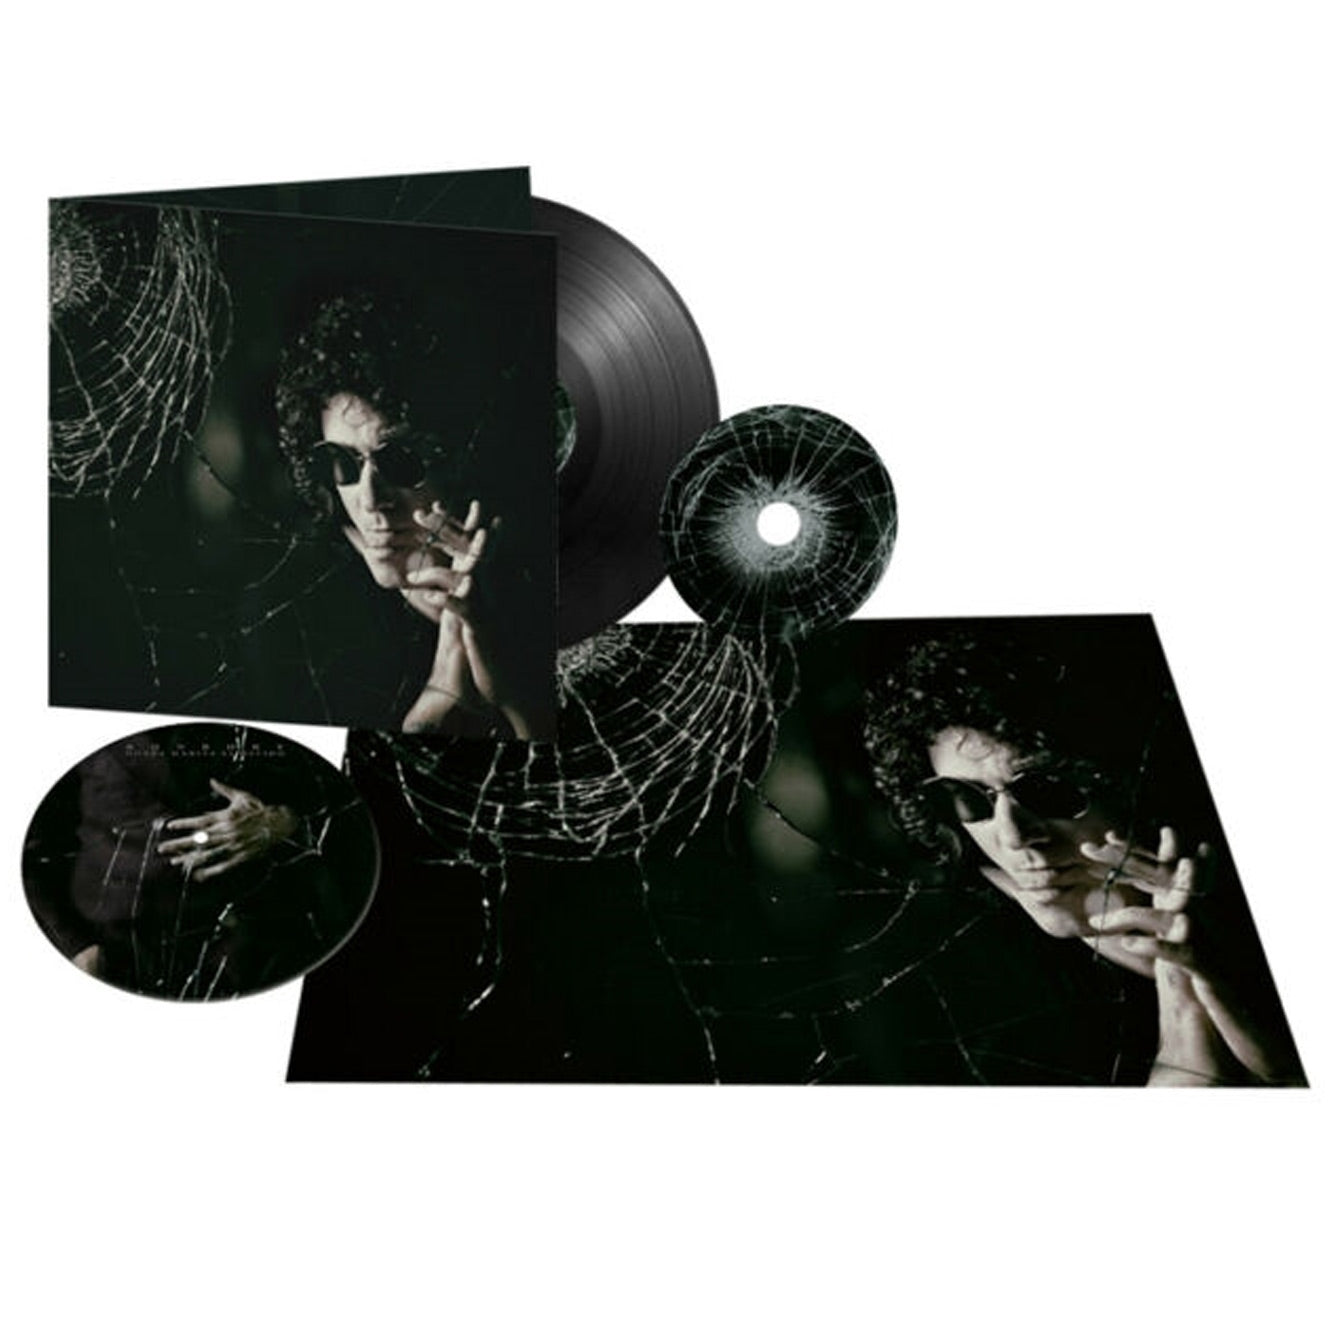 Enrique Bunbury - Posible (Vinilo color negro + CD + 7" picture disc + poster) - Importado!!